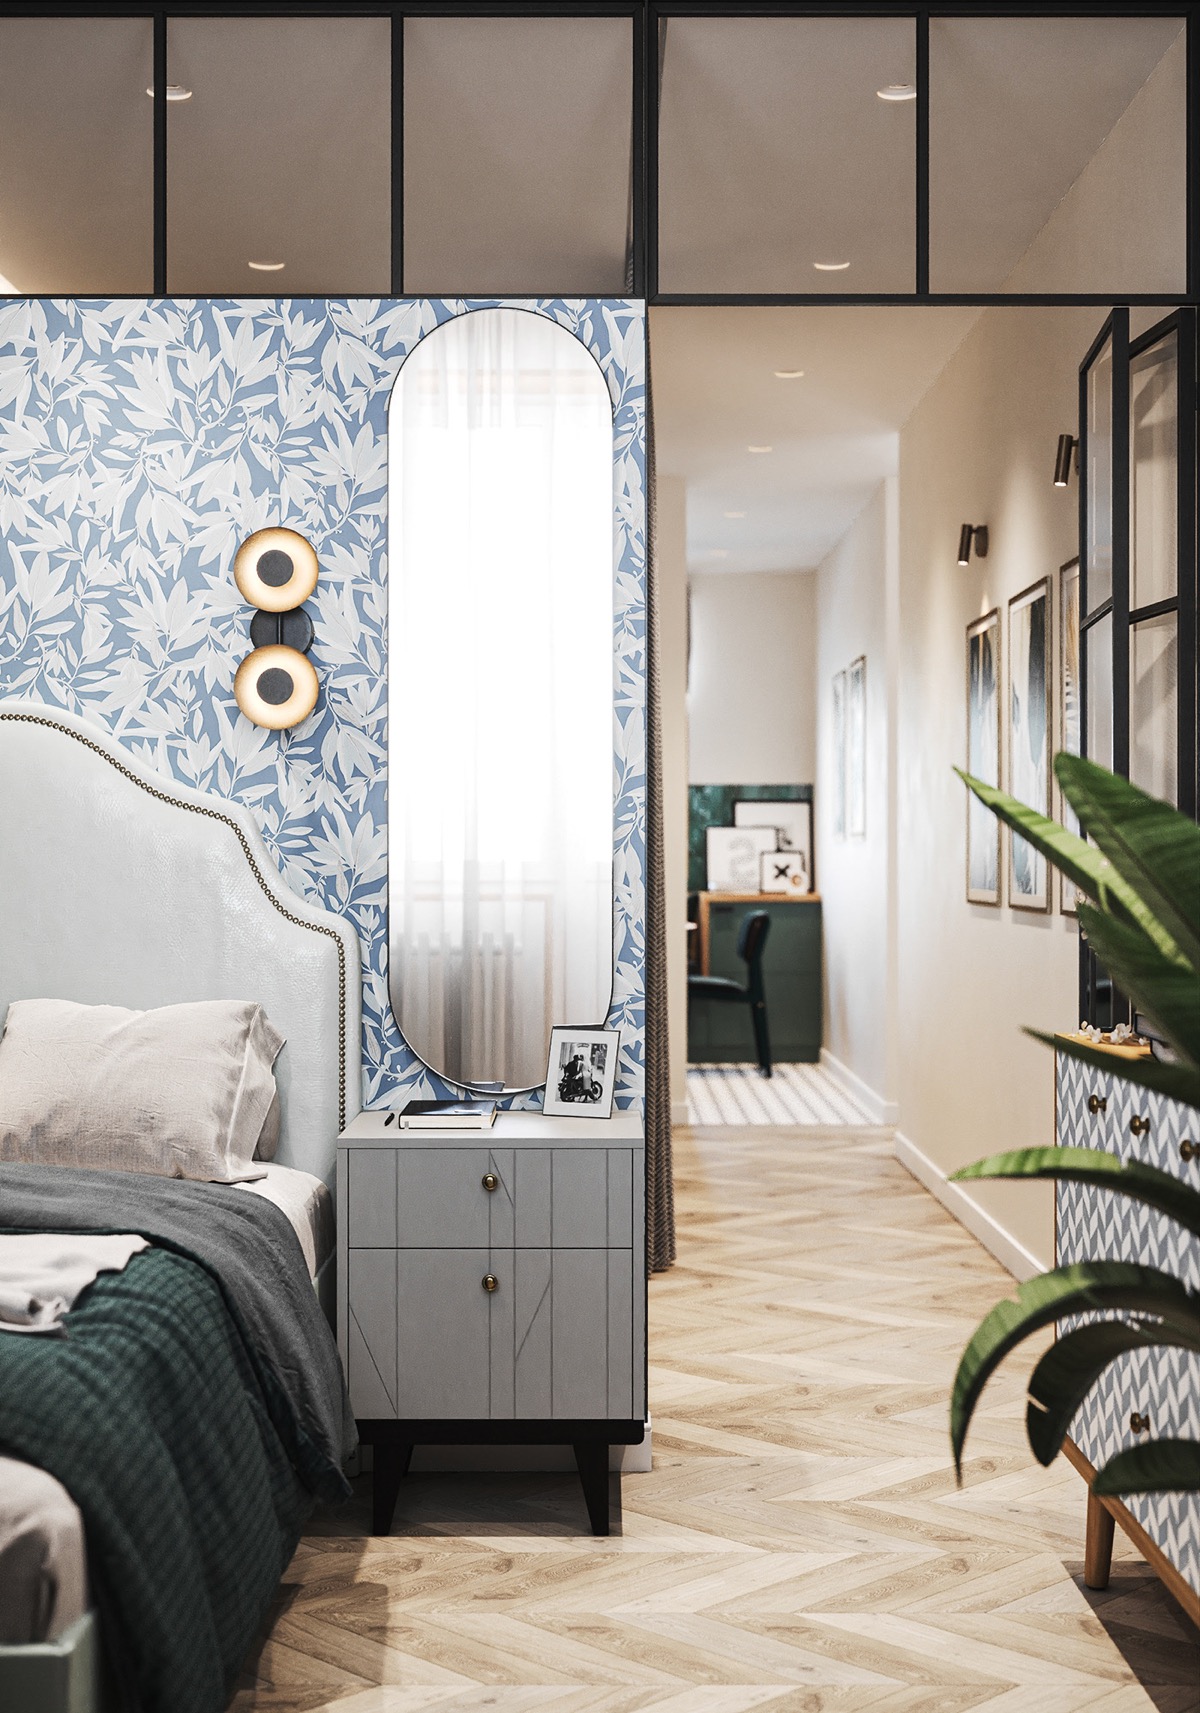 Ở phòng ngủ thứ hai, kiến trúc sư kết hợp các yếu tố trang trí màu xanh lam và xanh lá cây một cách tinh tế, hài hòa với không gian tổng thể.